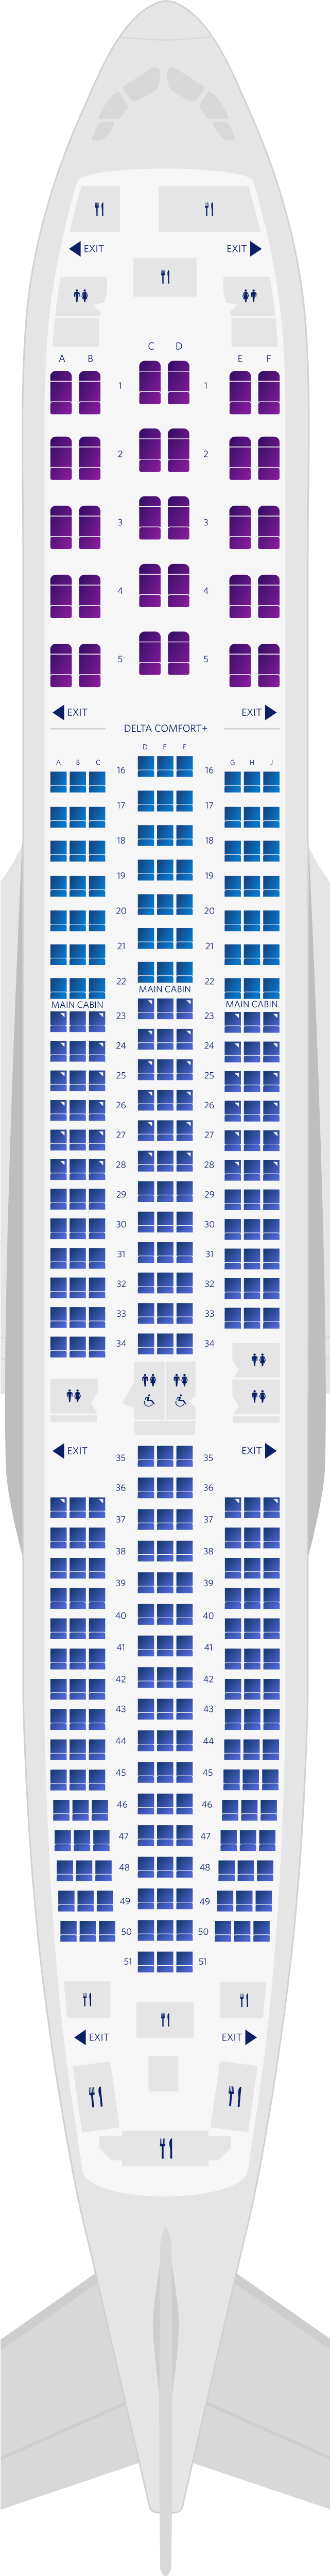 Mapa de assentos do Airbus A350-900 com 3 cabines